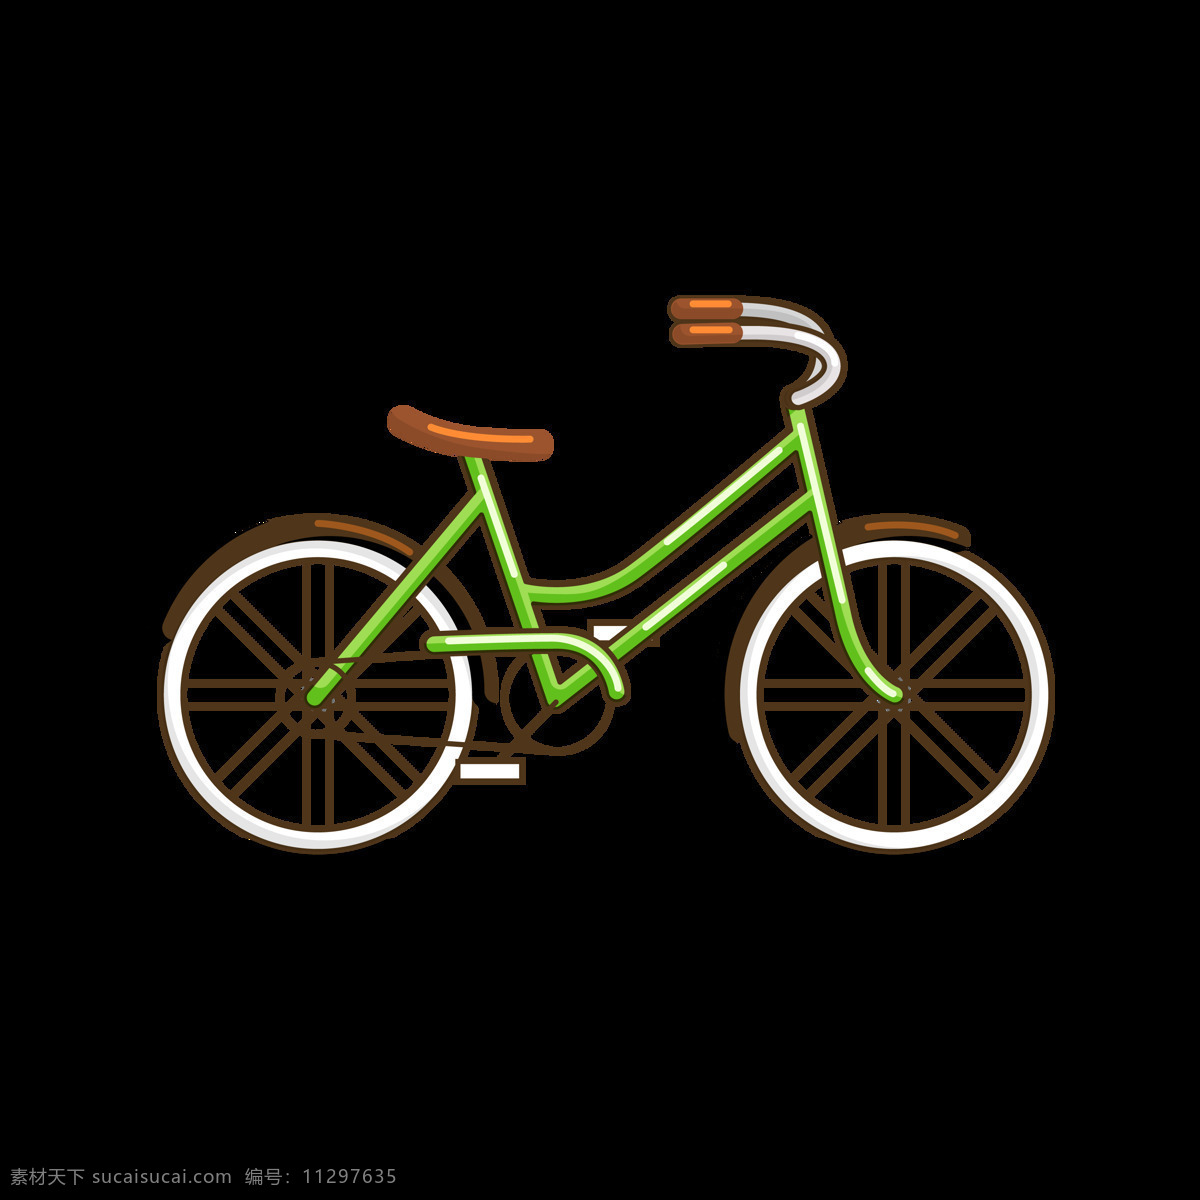 简约 自行车 插画 免 抠 透明 图 层 共享单车 女式单车 男式单车 电动车 绿色低碳 绿色环保 环保电动车 健身单车 摩拜 ofo单车 小蓝单车 双人单车 多人单车